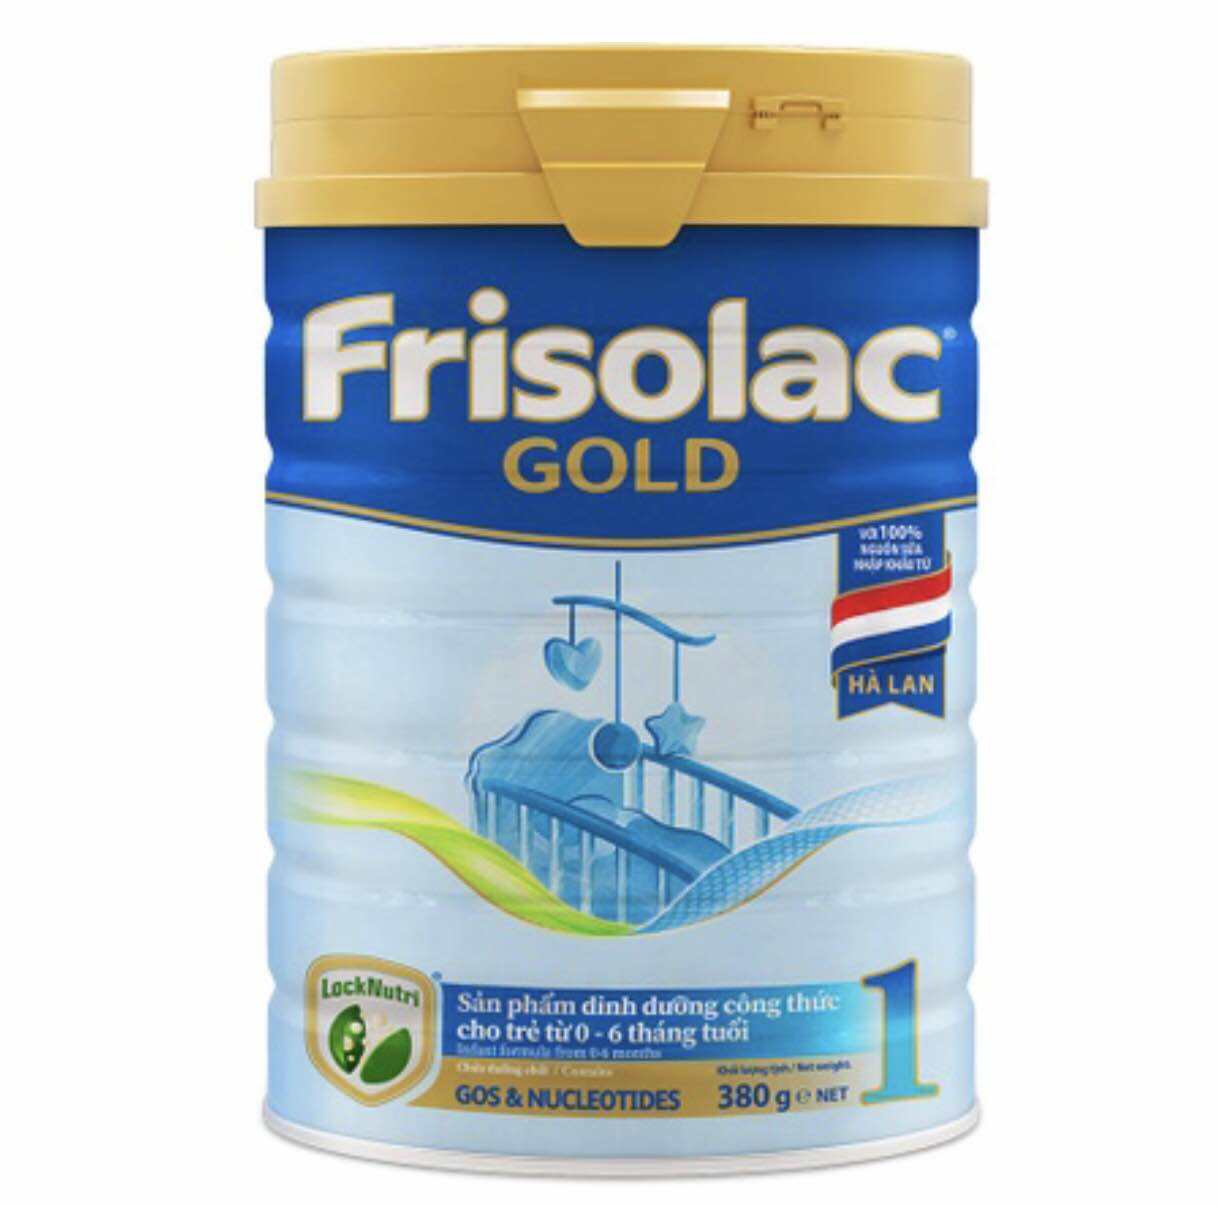 SỮA BỘT FRISOLAC GOLD 1- 380G 0-6 Tháng Tuổi.